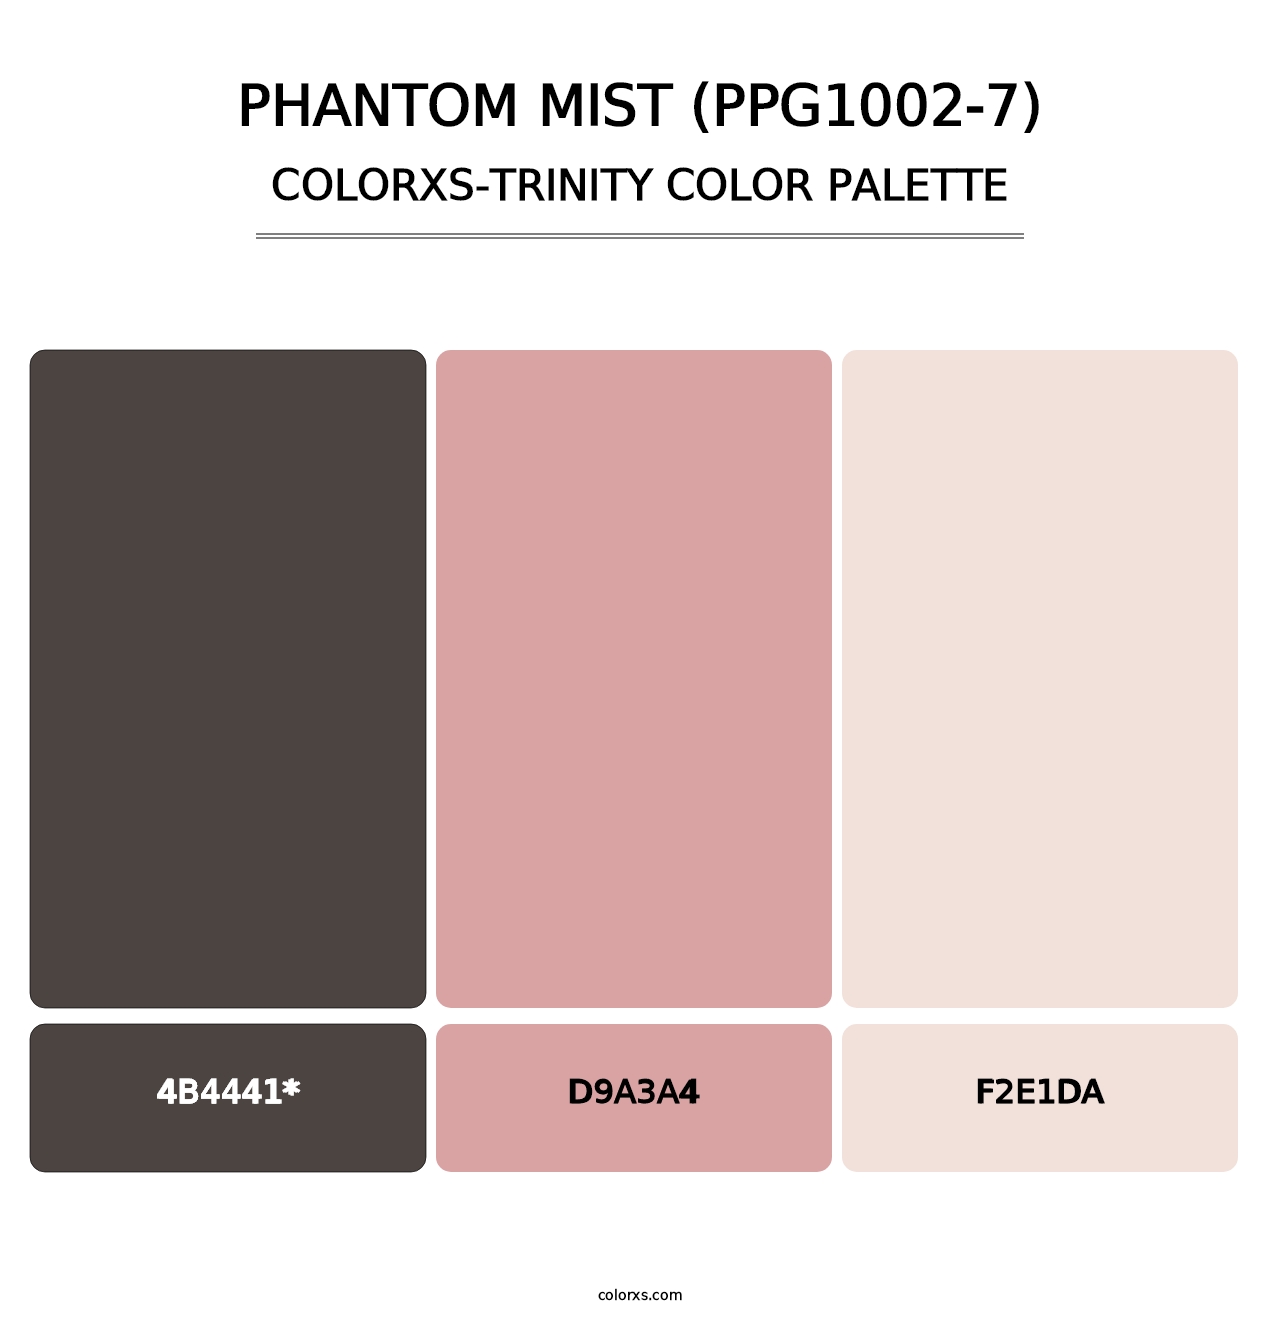 Phantom Mist (PPG1002-7) - Colorxs Trinity Palette